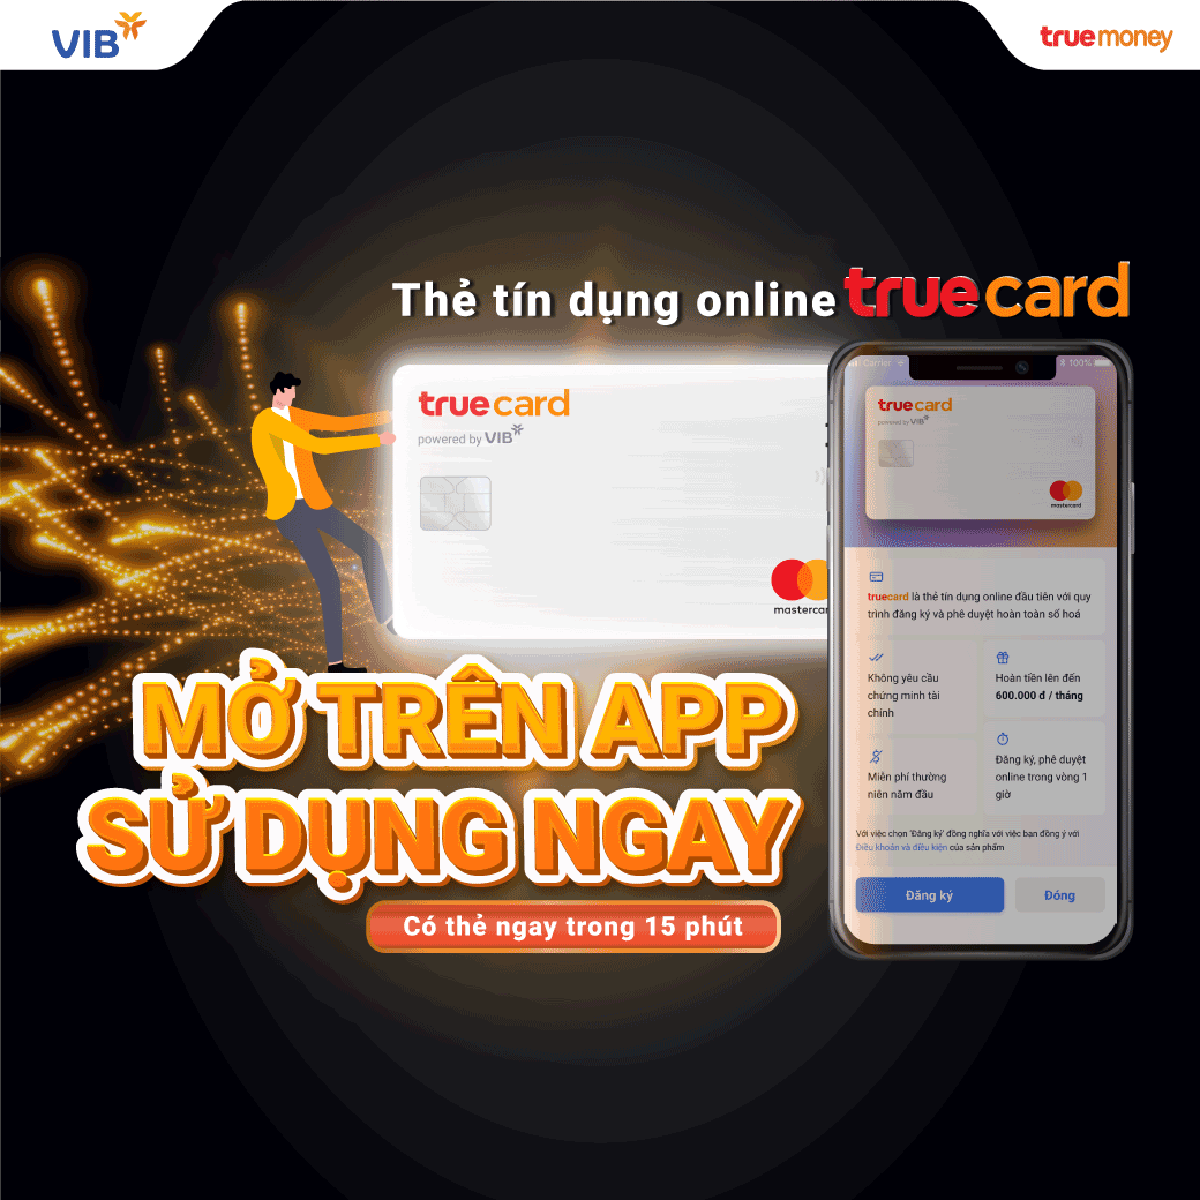 Người dùng TrueCard có thể có ngay hạn mức thẻ đến 200 triệu đồng trong vòng 15 phút sau khi hoàn tất các bước đăng ký trực tuyến